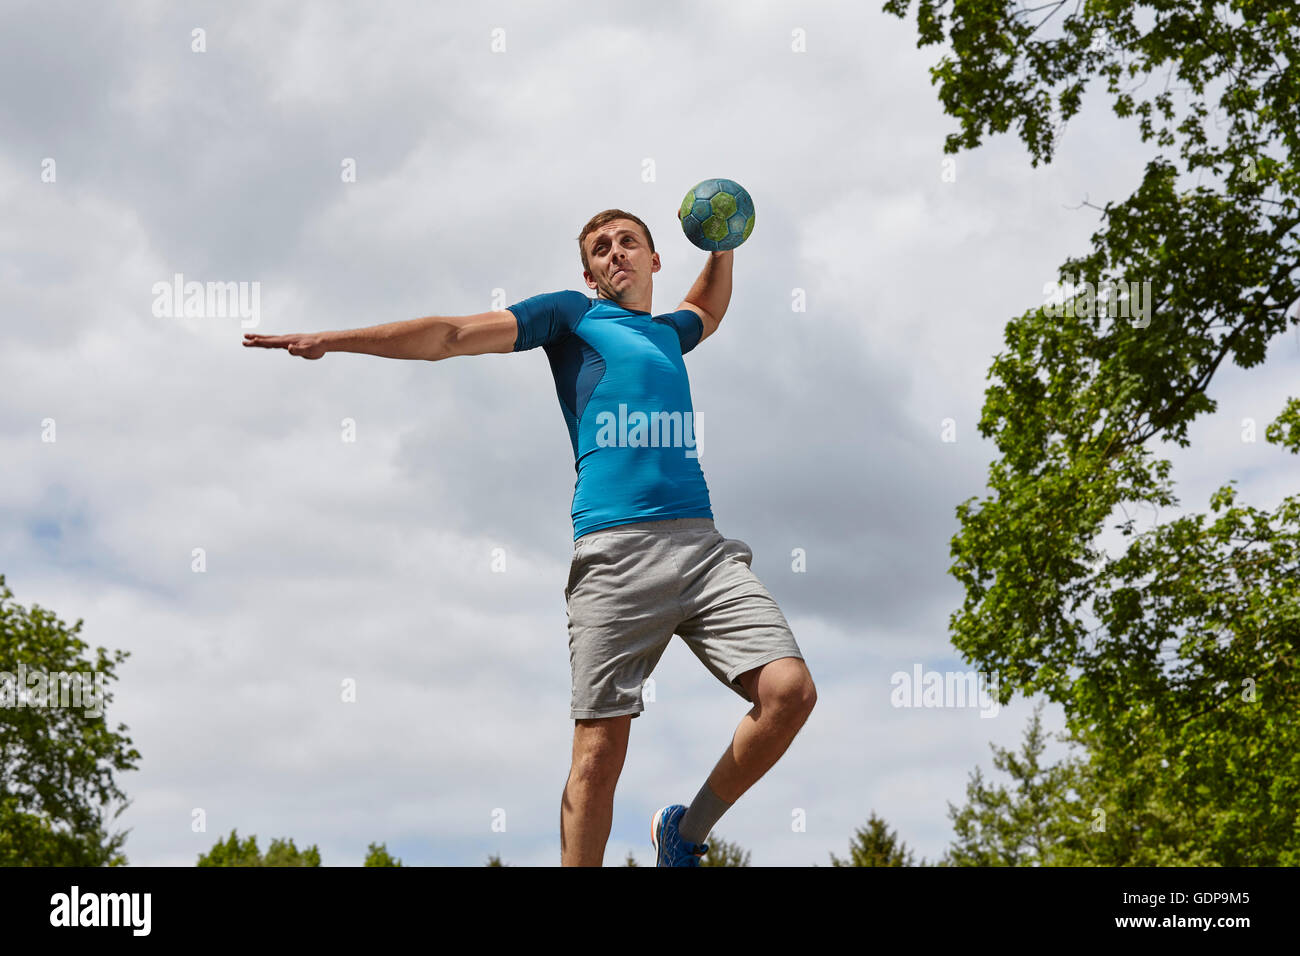 Junge männliche Handballer Ball werfen wird vorbereitet Stockfoto